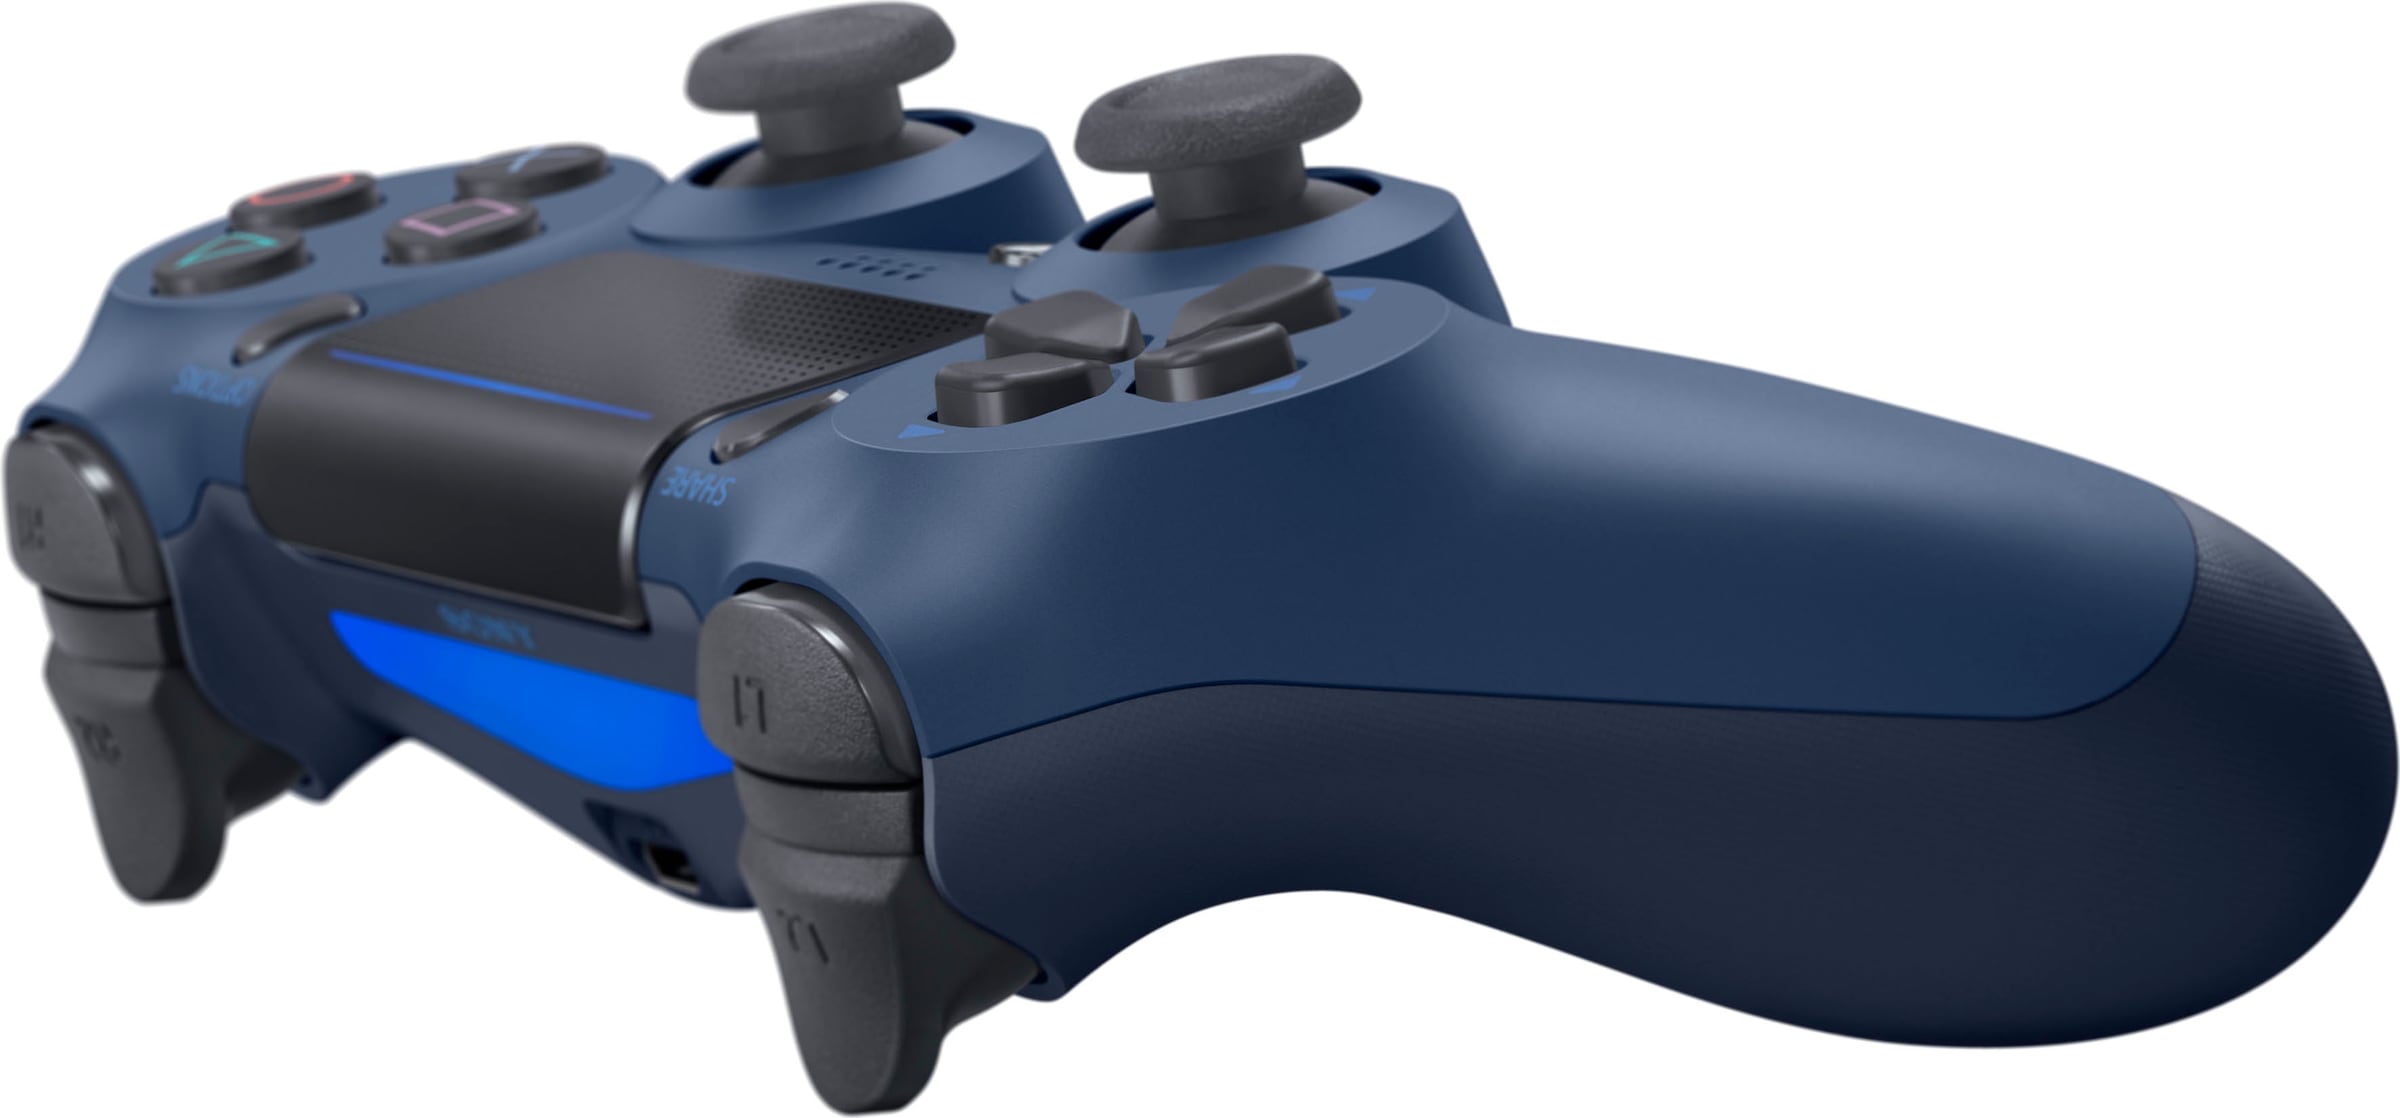 PlayStation 4 Wireless-Controller »Dualshock« online bei OTTO